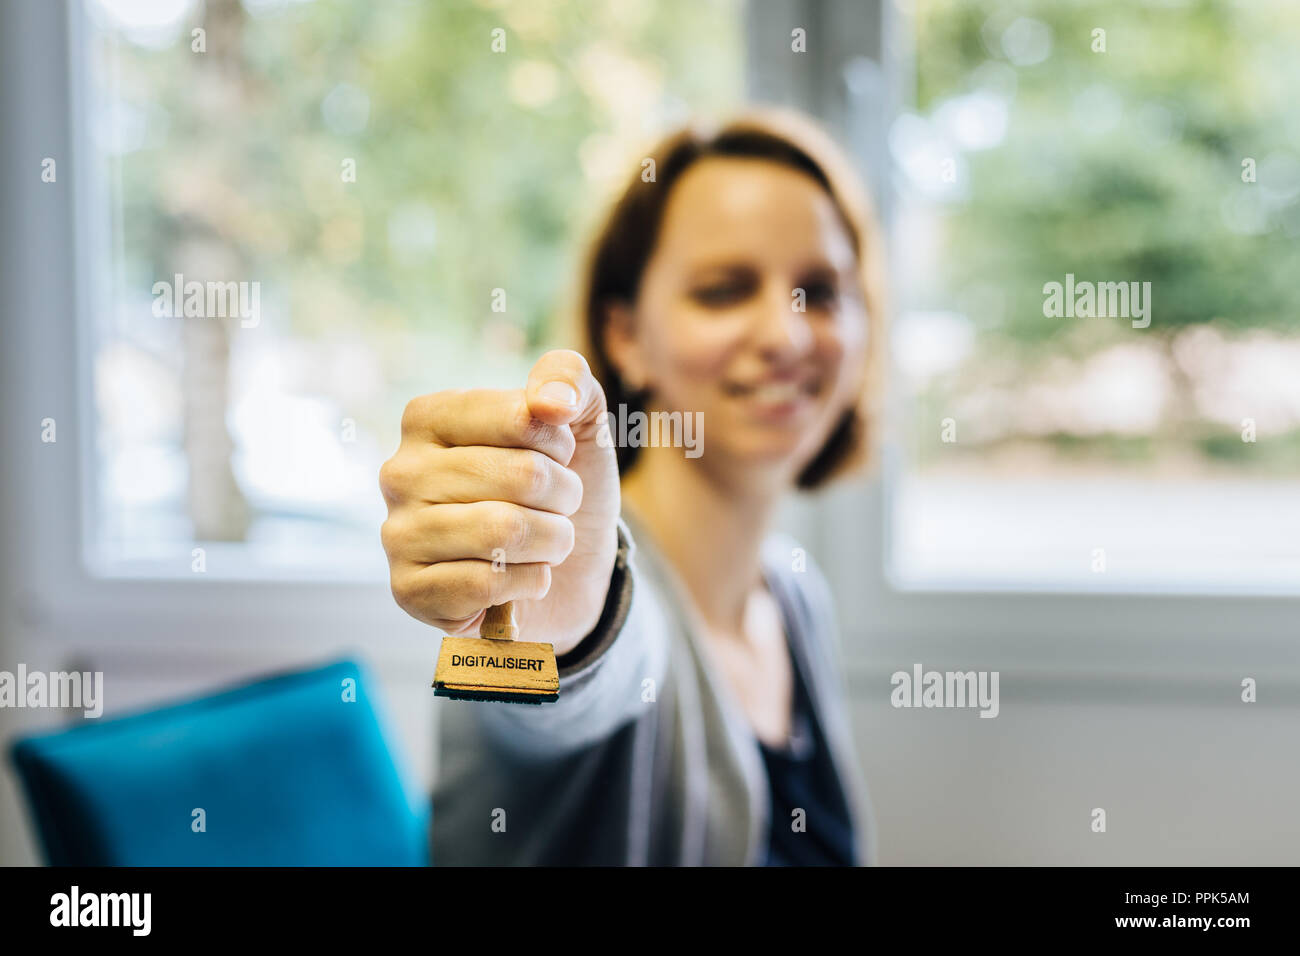 Une femme dans un bureau en bois possède un timbre avec le mot allemand "igitalisiert igitalized' qui veut dire '' dans l'appareil photo, la profondeur de champ Banque D'Images